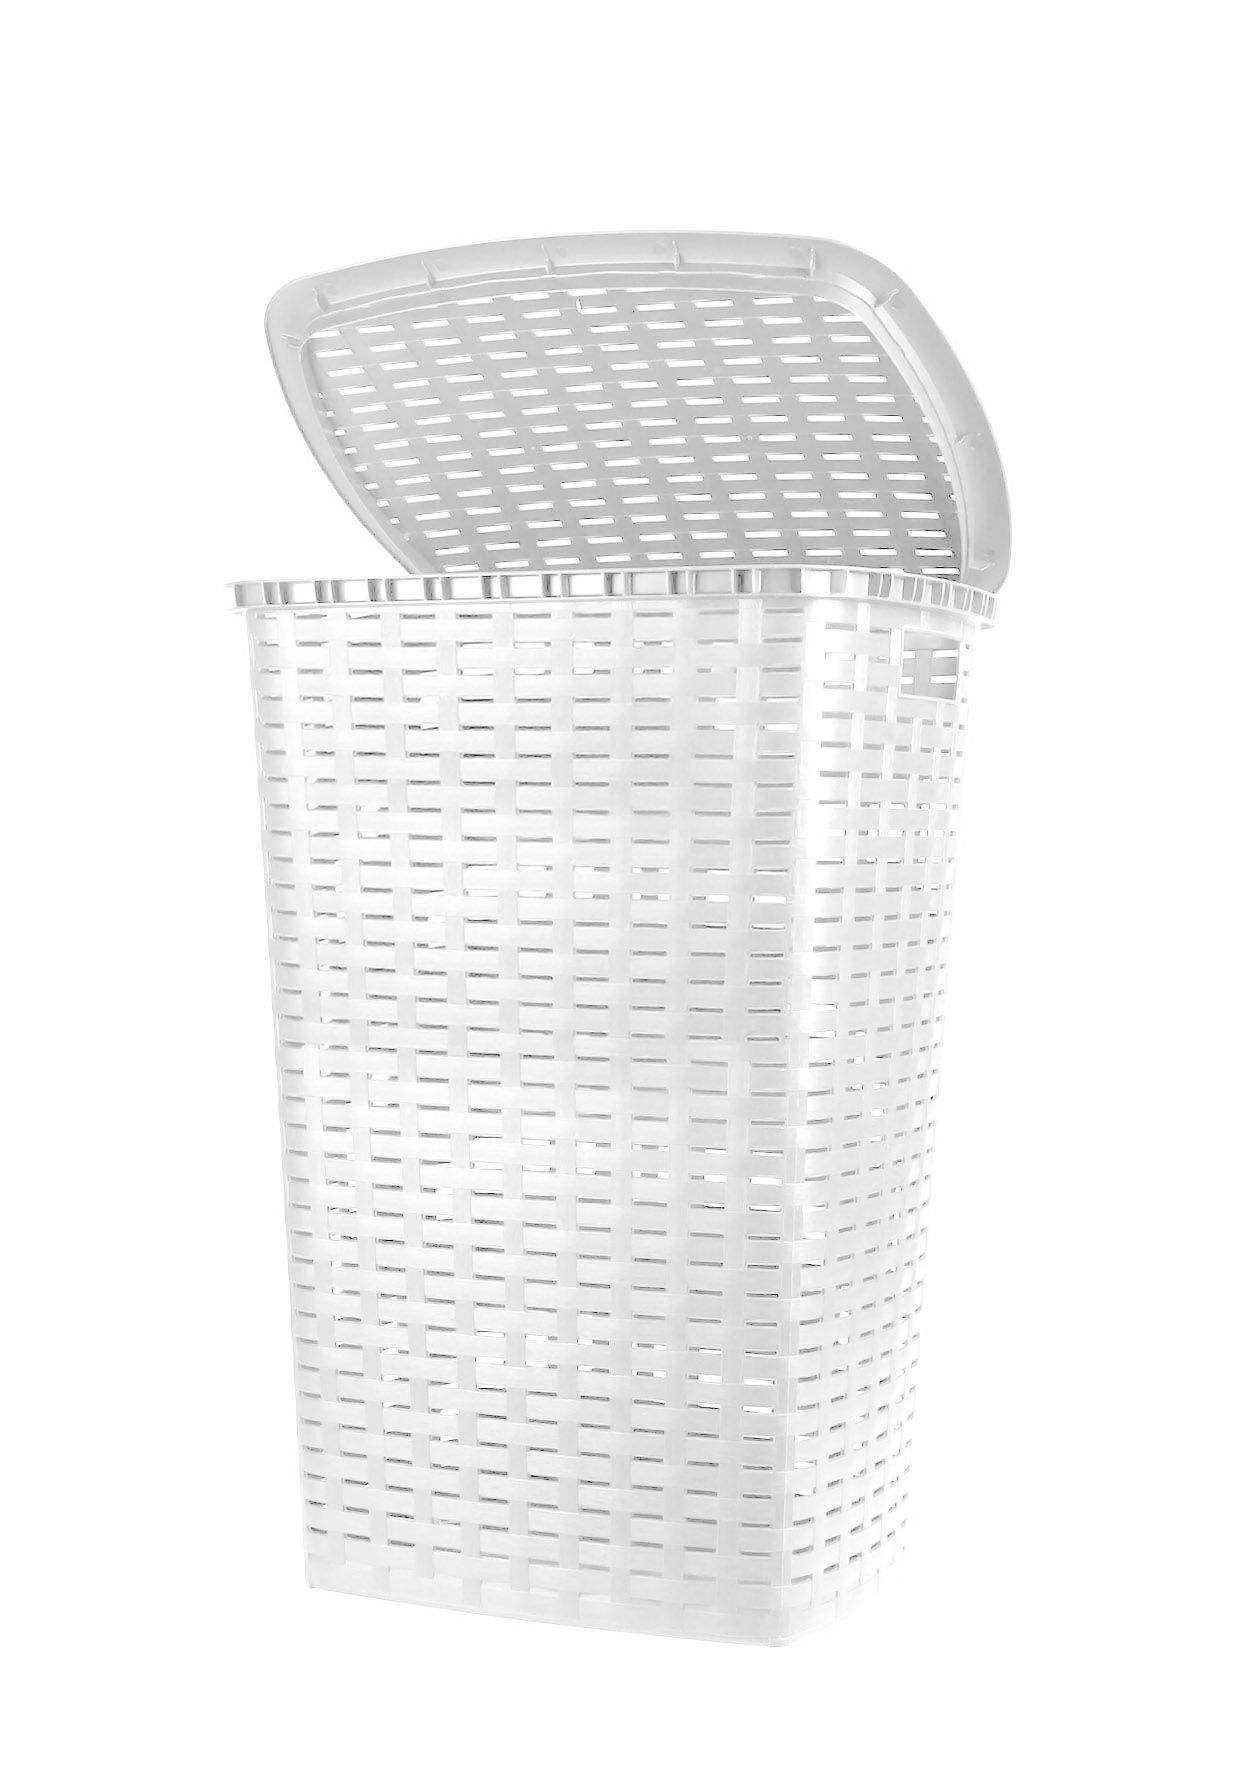 Kunststoff Wäschekorb in Rattan Optik 53 Liter - weiß - Wäschebox mit Deckel und Tragegriffen